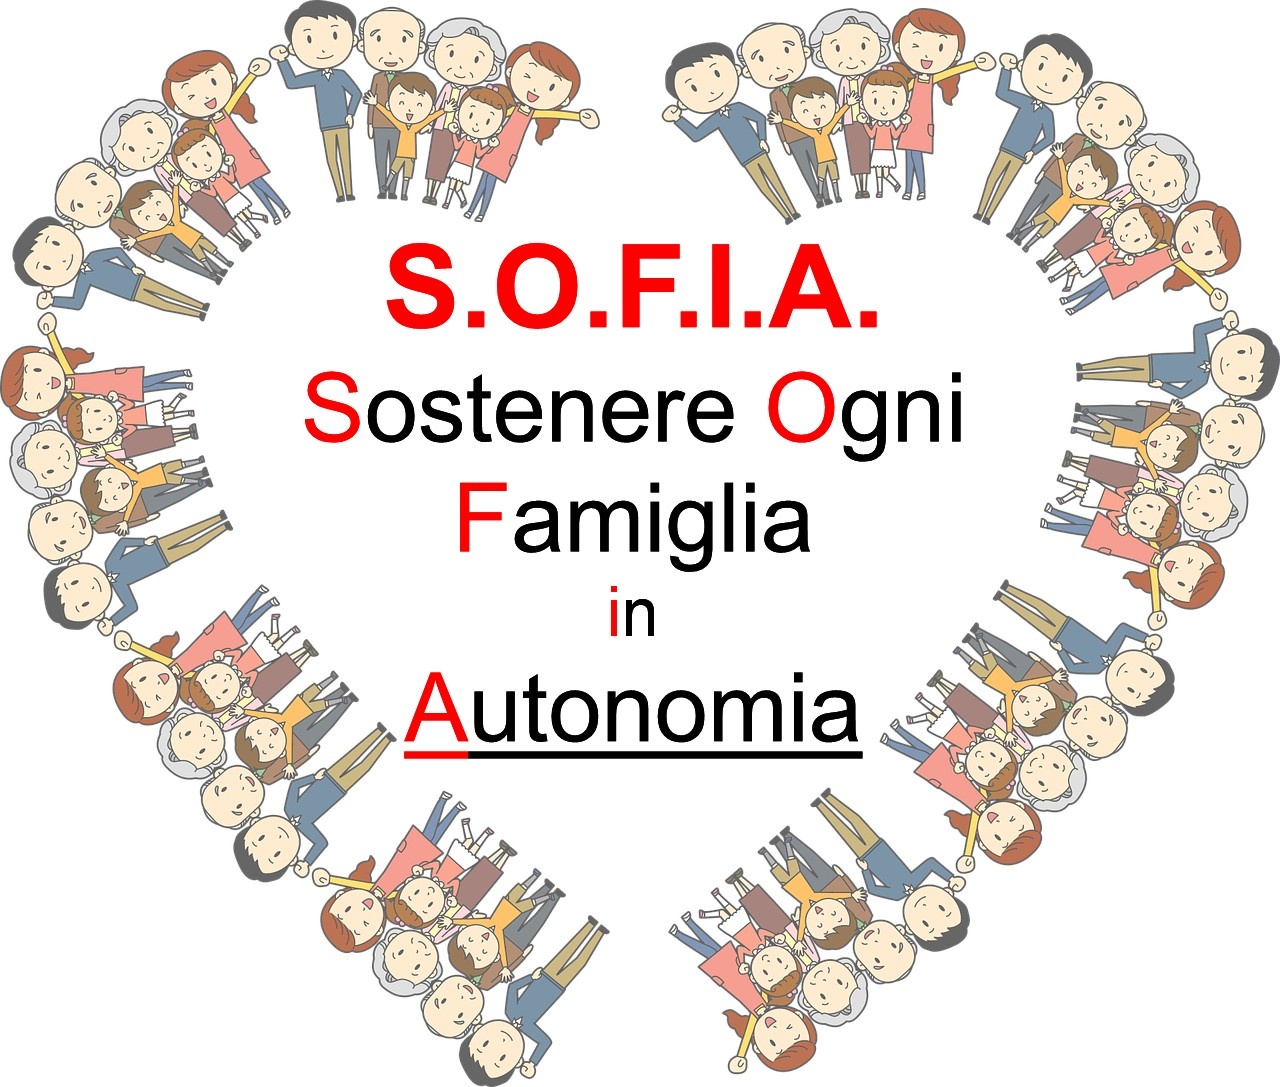 S.O.F.I.A. - Sostenere Ogni Famiglia In Autonomia Srl